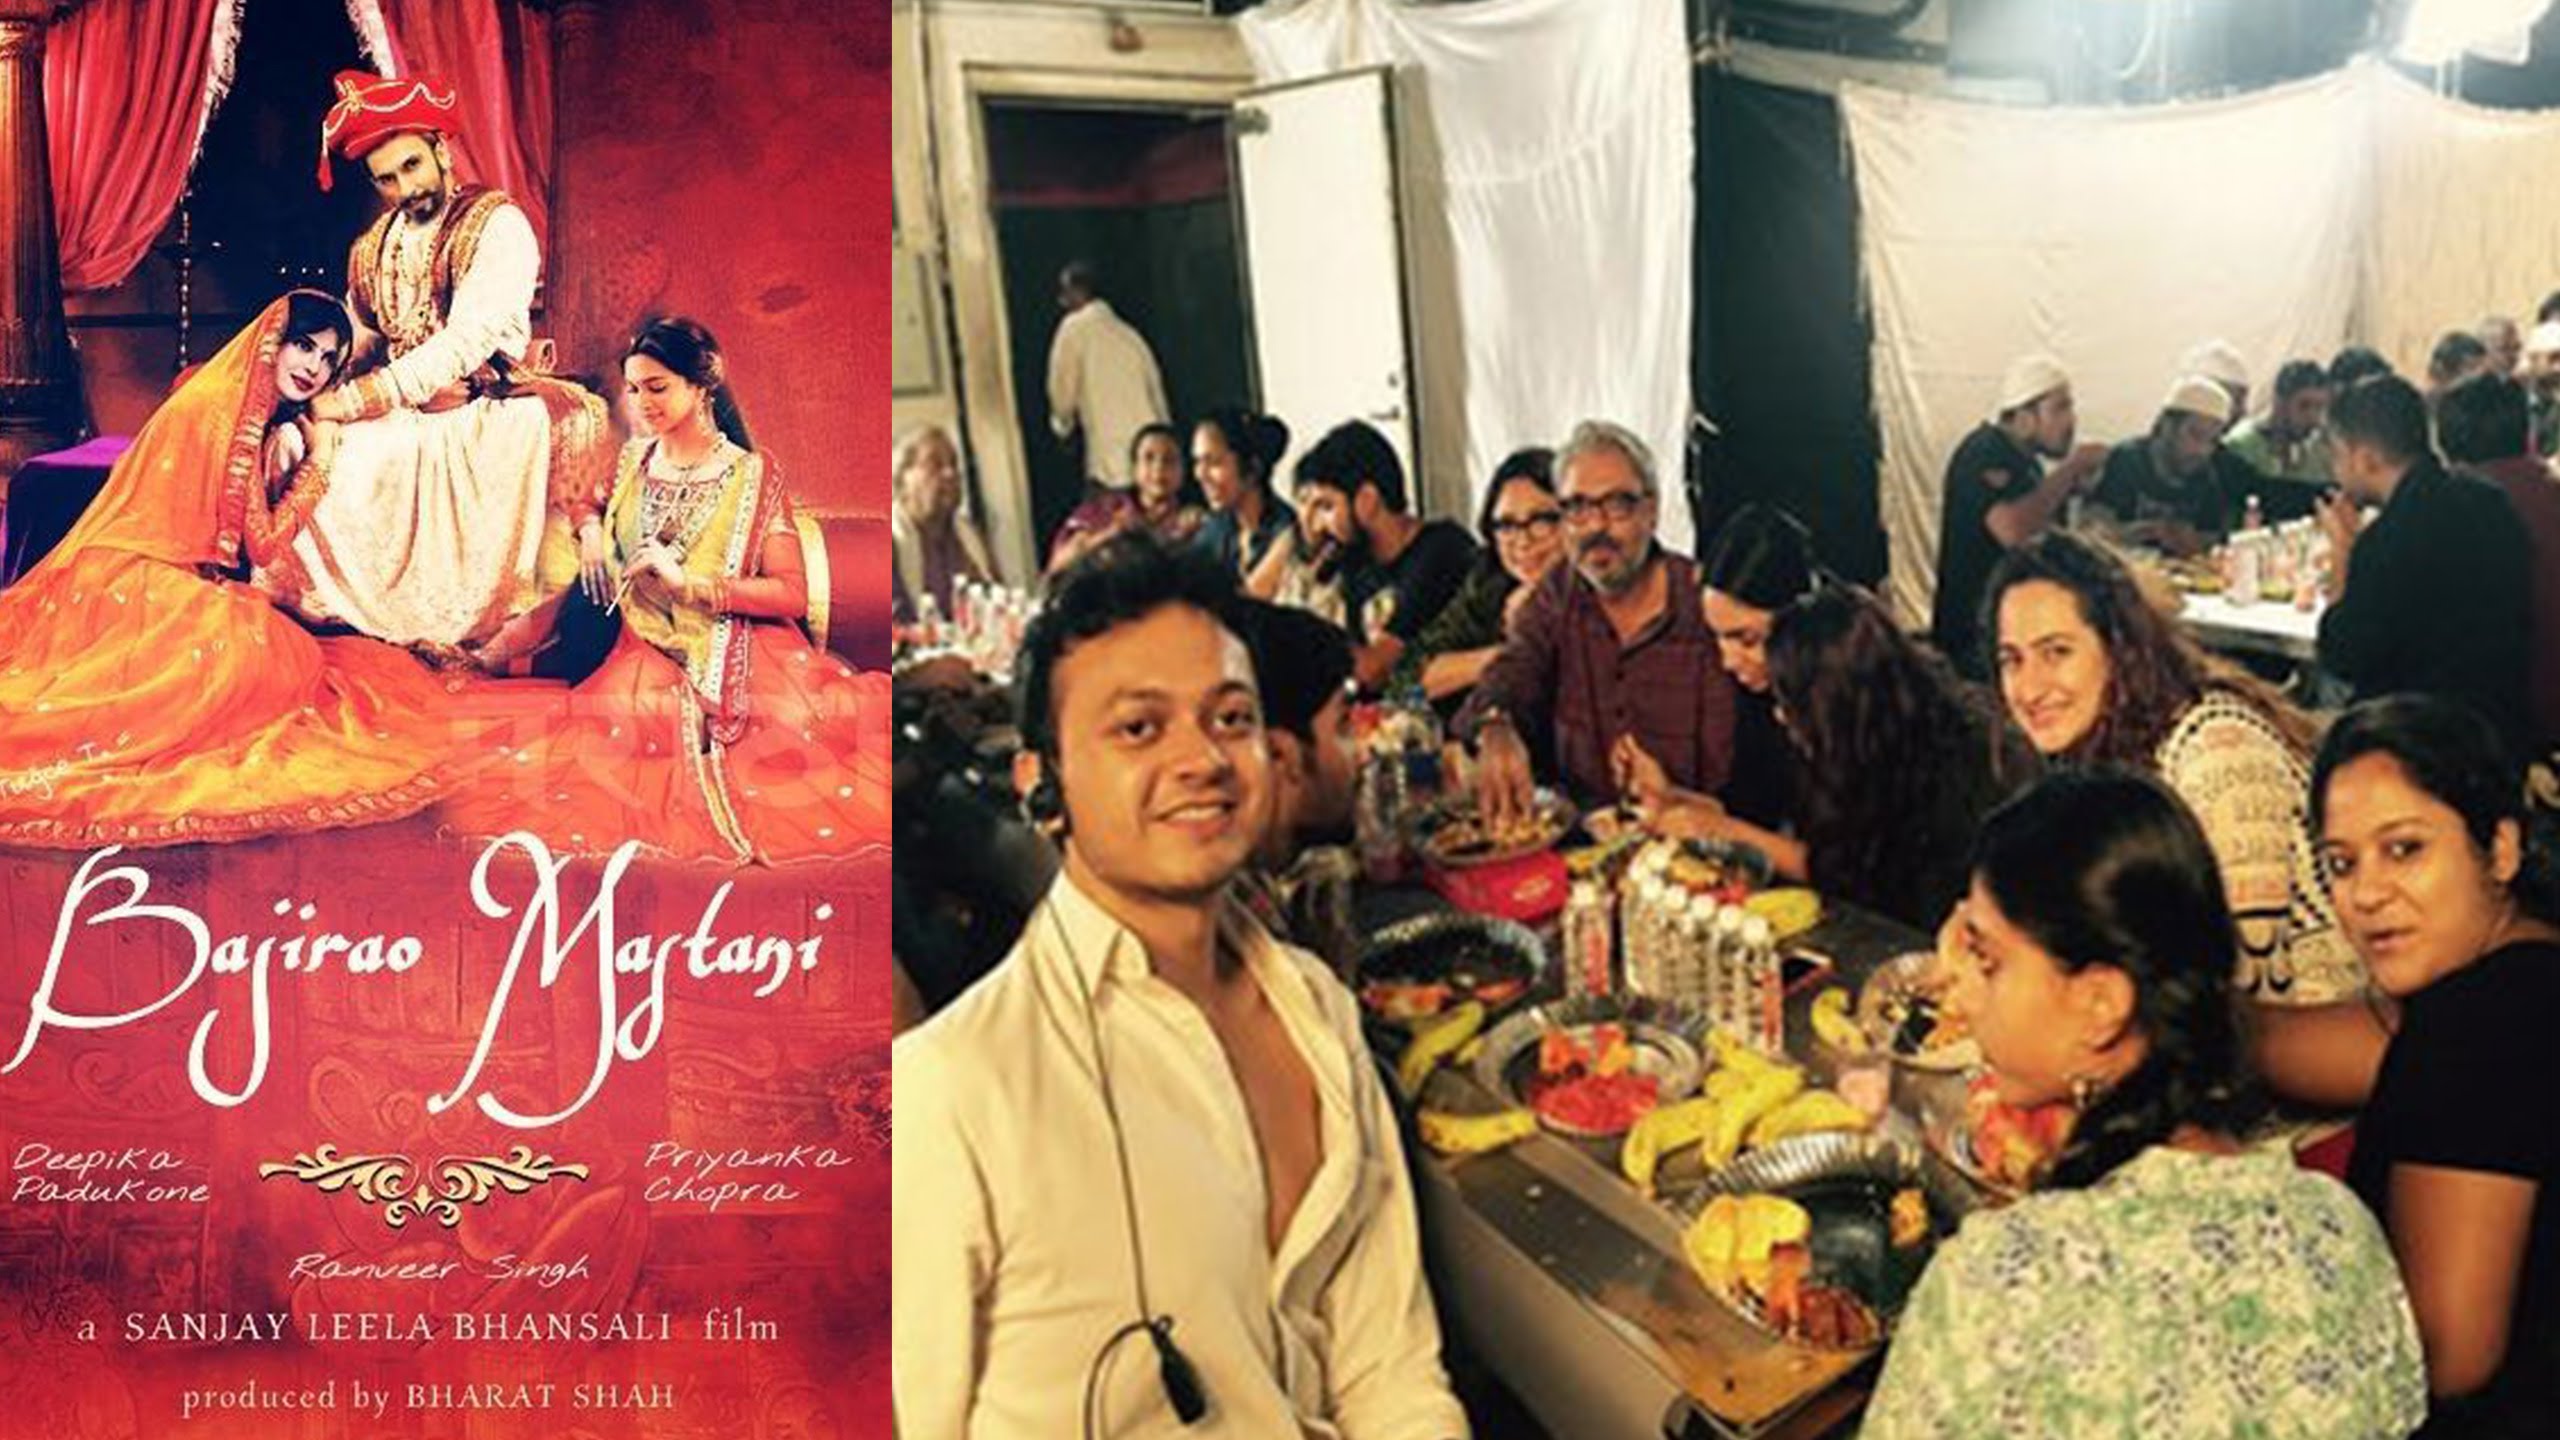 Sanjay Leela Bhansali invites Bajirao Peshwa's family on 'Bajirao Mastani' sets